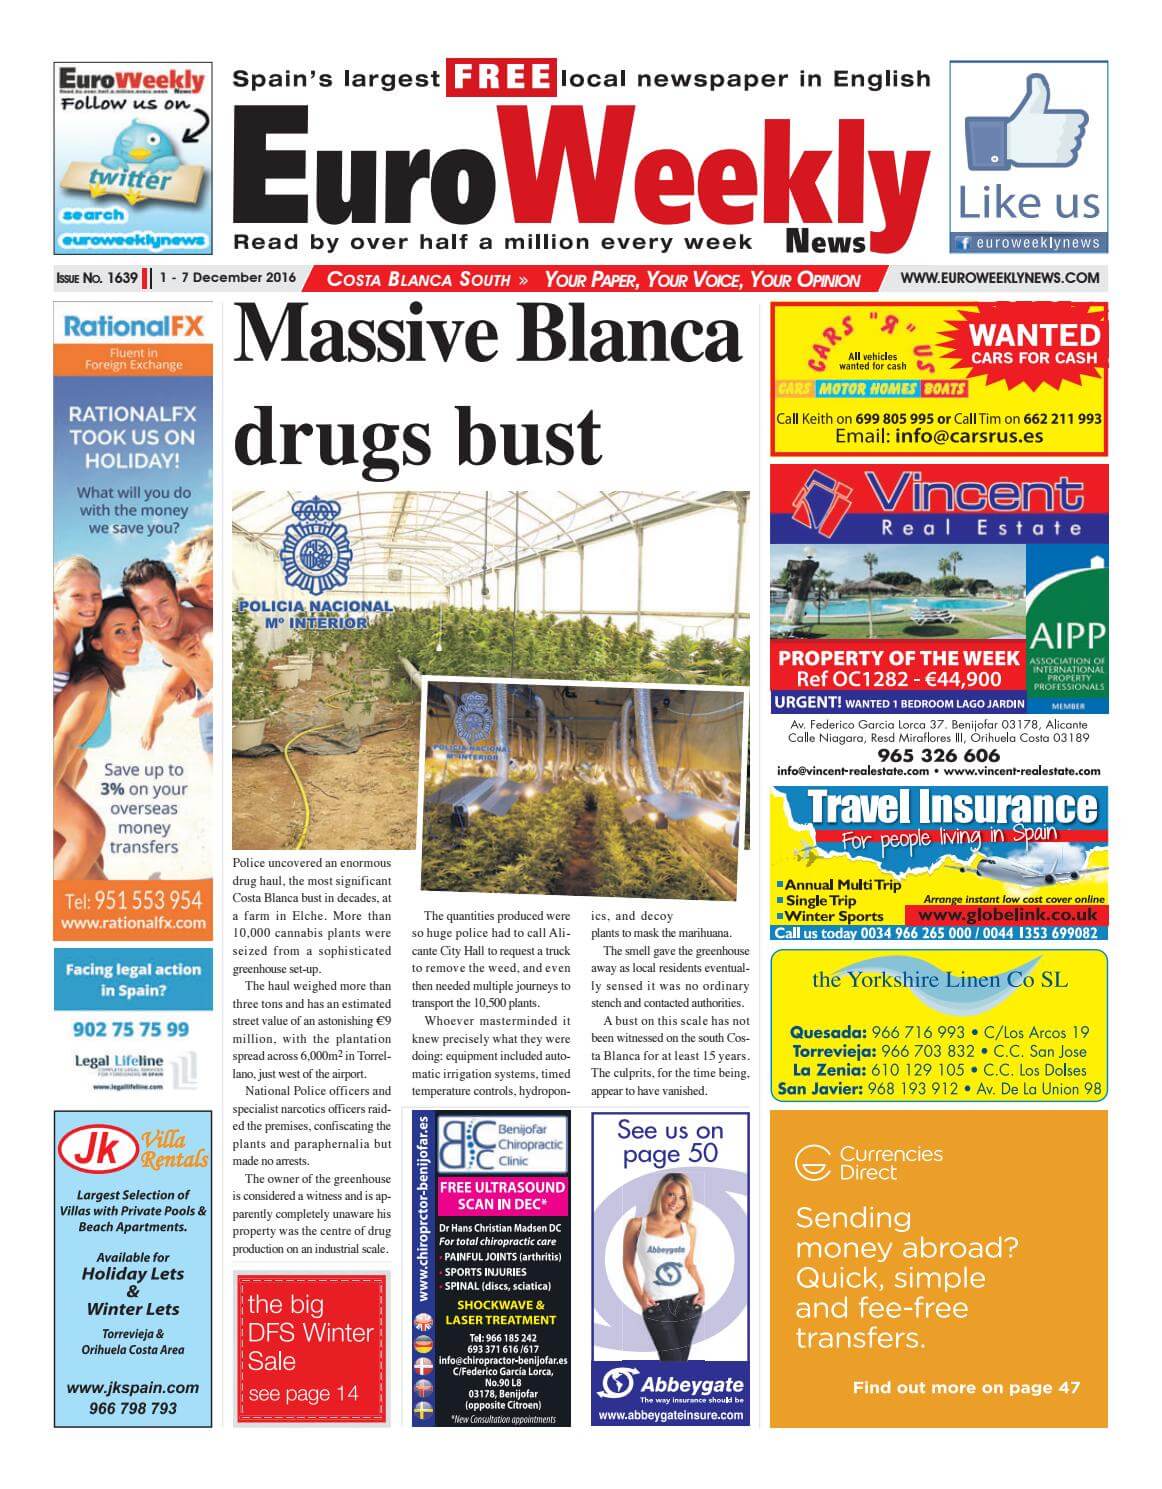 Spain newspapers 30 Euro Weekly News post